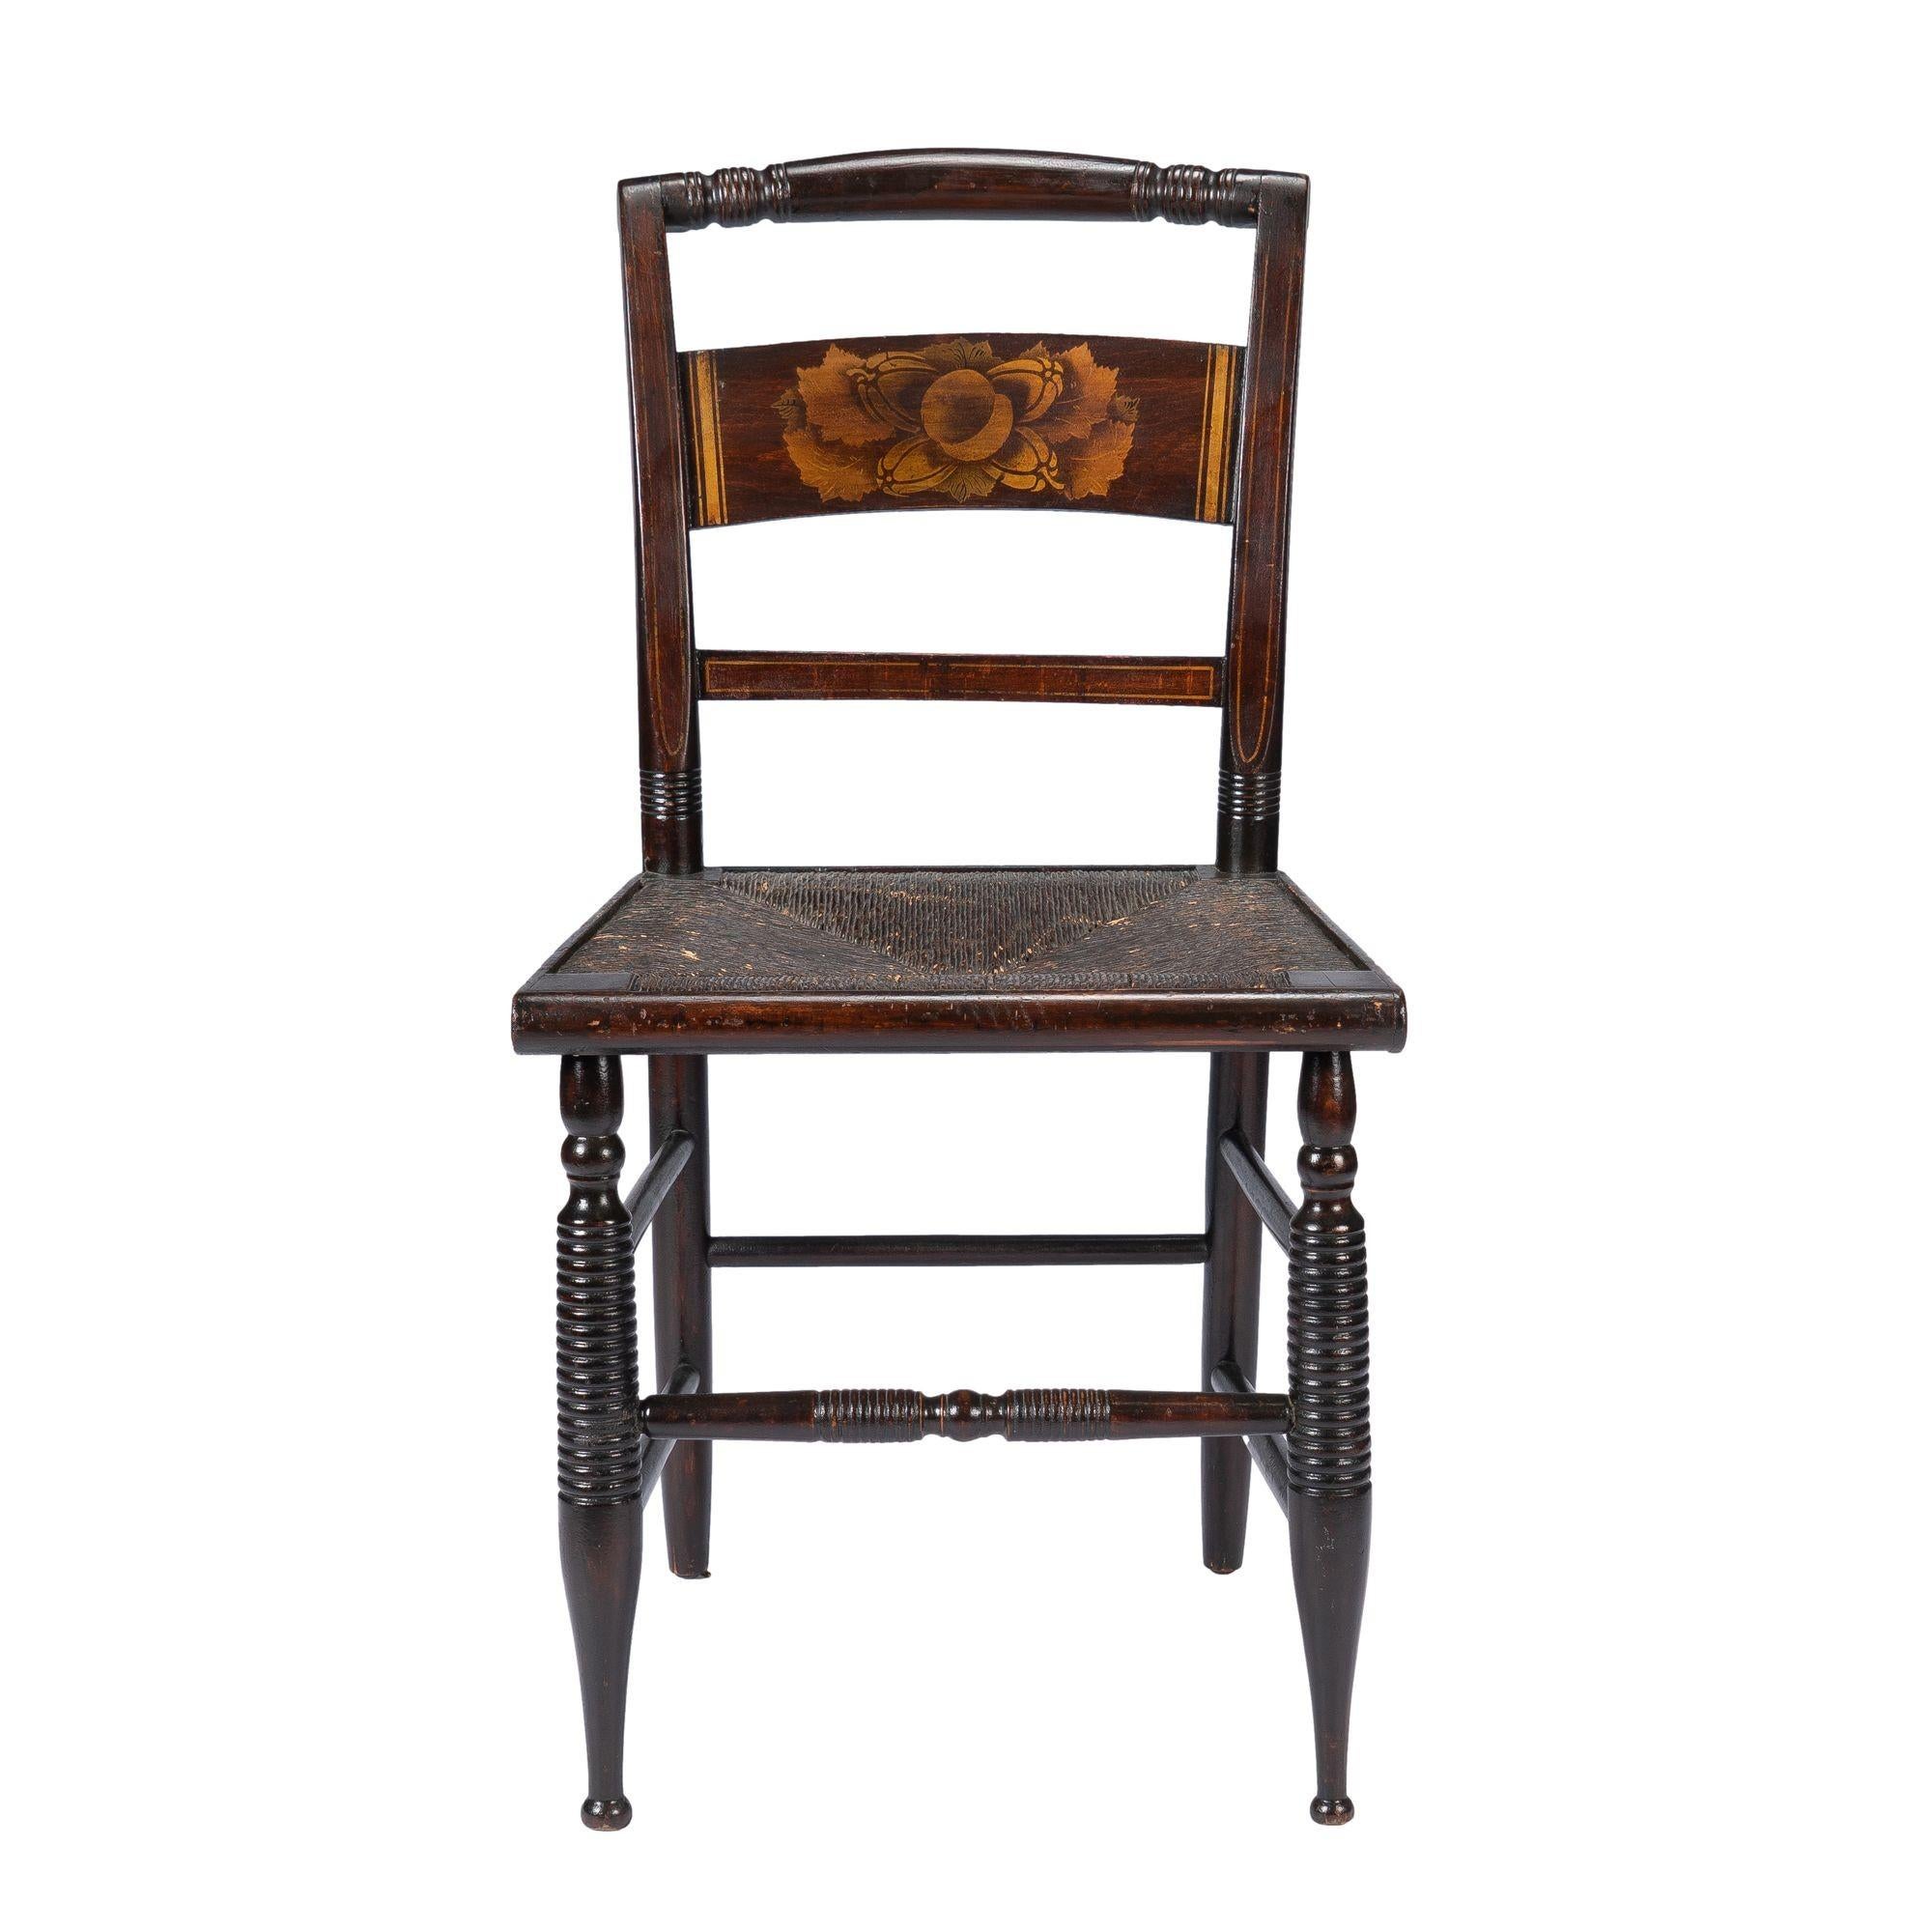 Chaise Sheraton américaine peinte et décorée au pochoir de poudre de bronze, assise en jonc de type Hitchcock.

Américain, Connecticut Valley, vers 1820.

Dimensions : 17-1/2